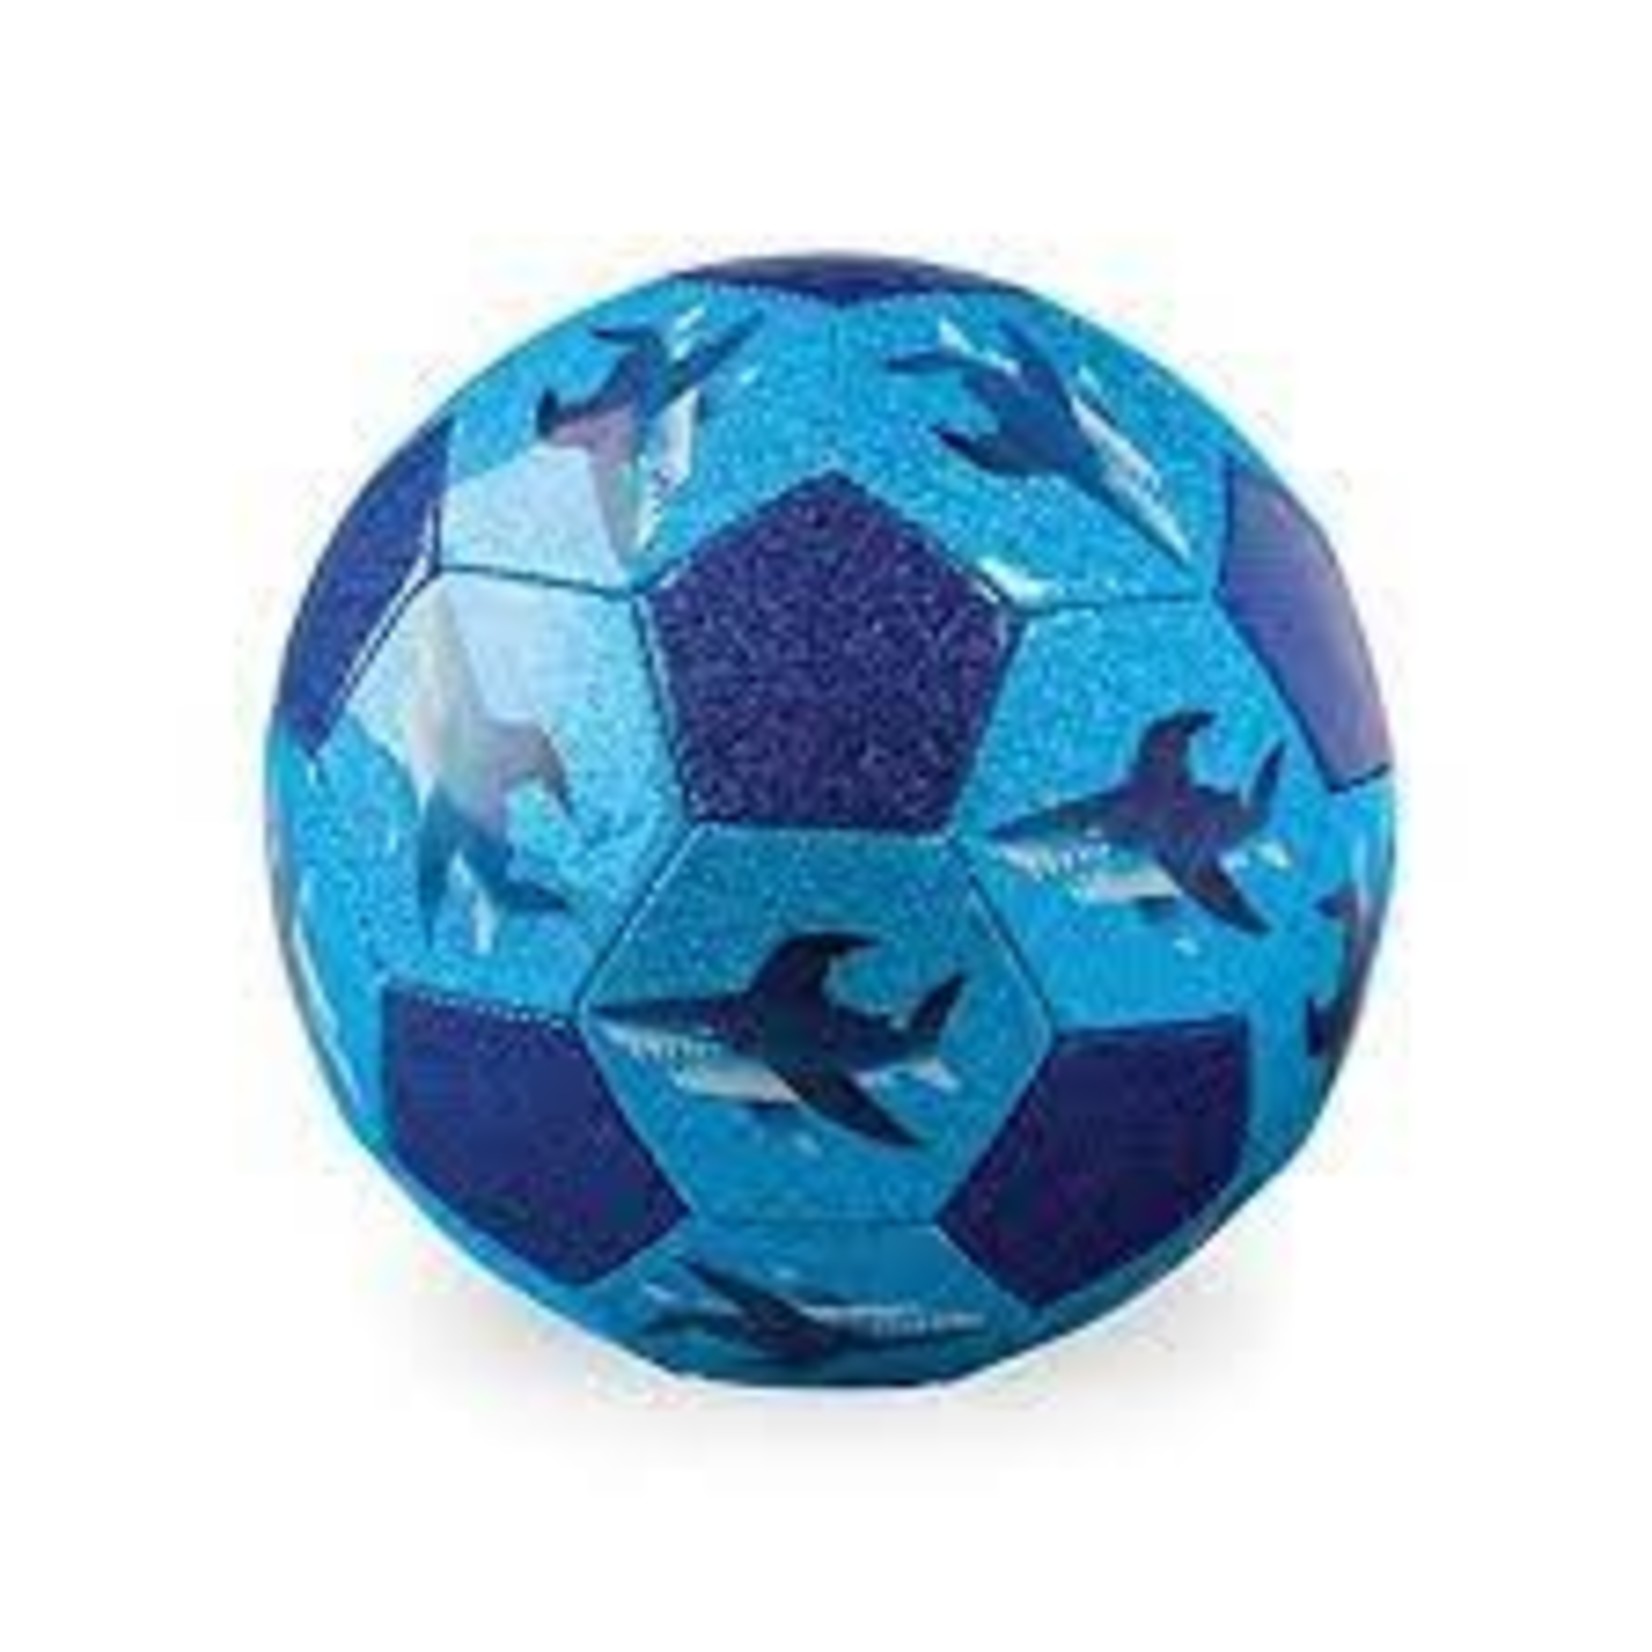 Crocodile Creek Shark City Soccer Ball - Size 3